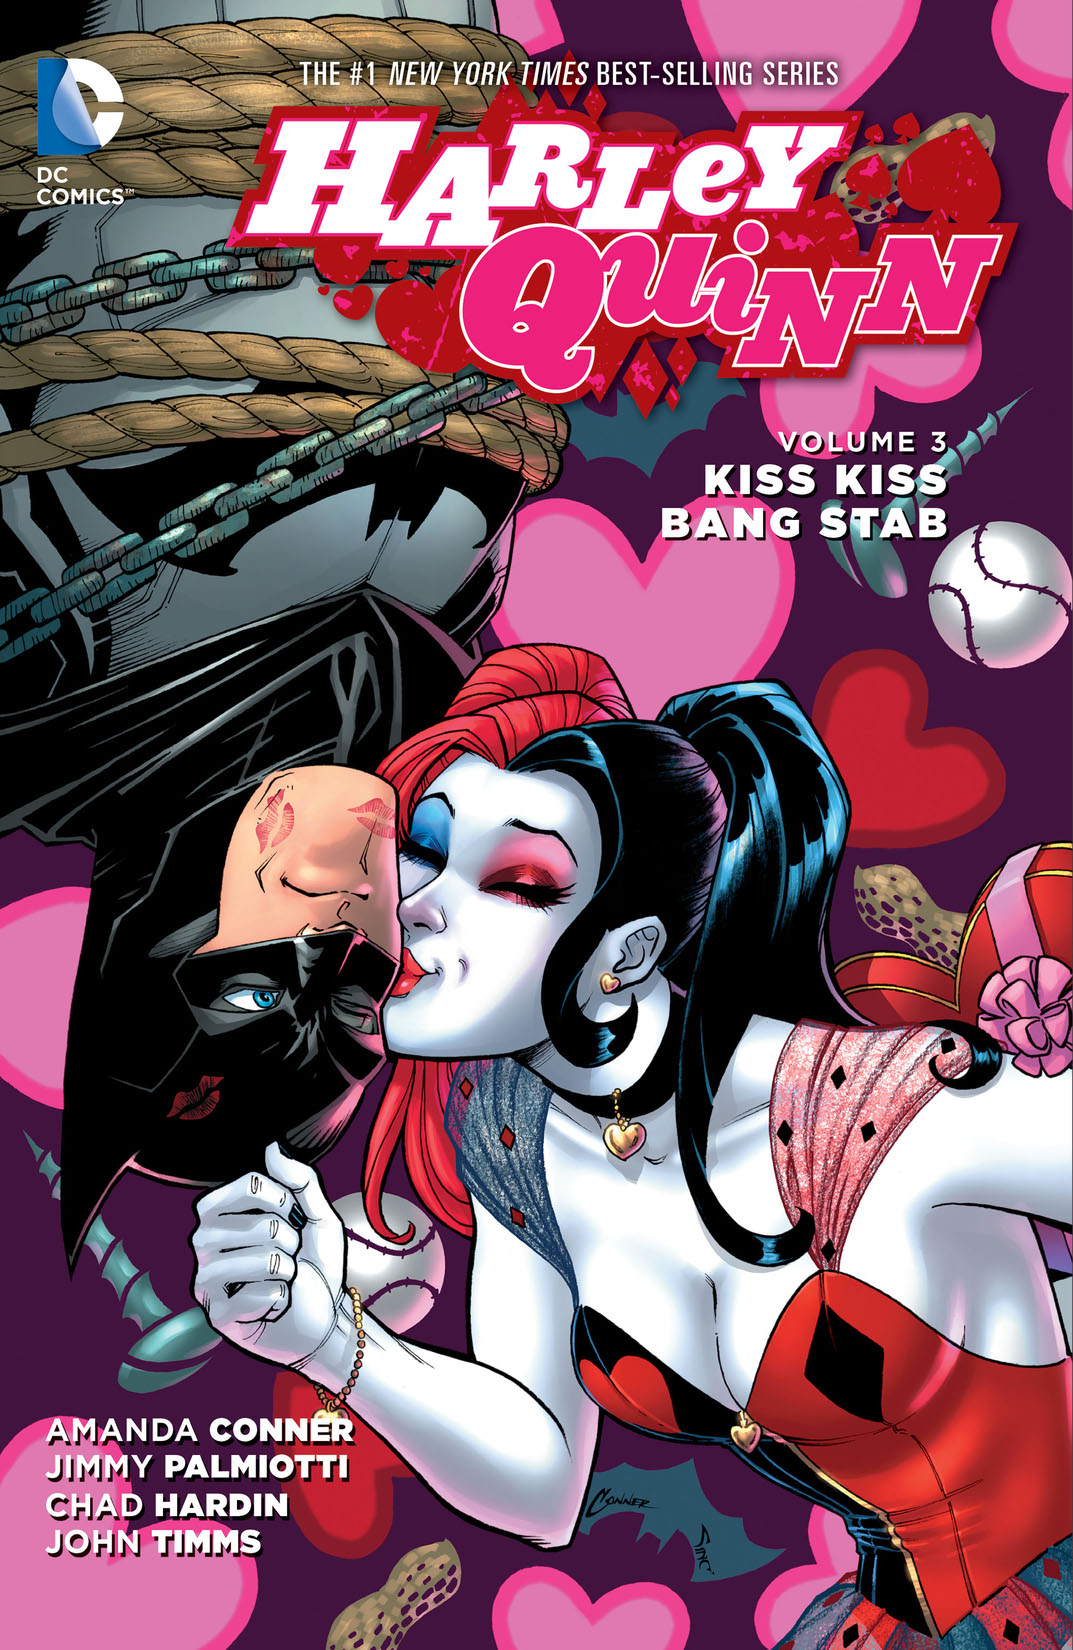 Harley Quinn Vol. 3: Kiss Kiss Bang Stab preview images